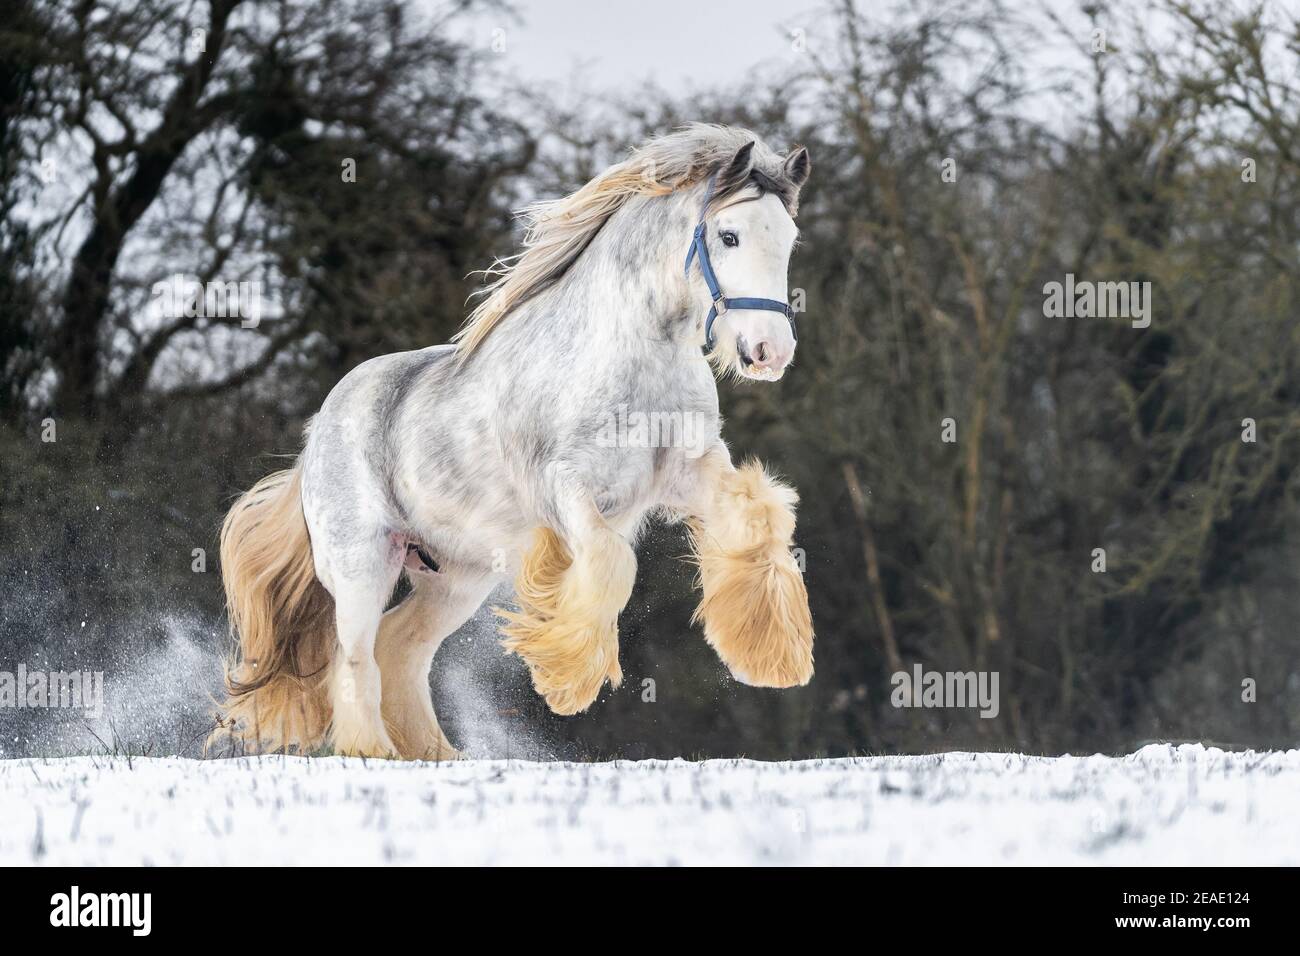 Bella grande irlandese zingaro cavallo cob foal correre selvaggio in neve al suolo che si alza in alto le grandi gambe anteriori in piuma verso la fotocamera attraverso le piume Foto Stock